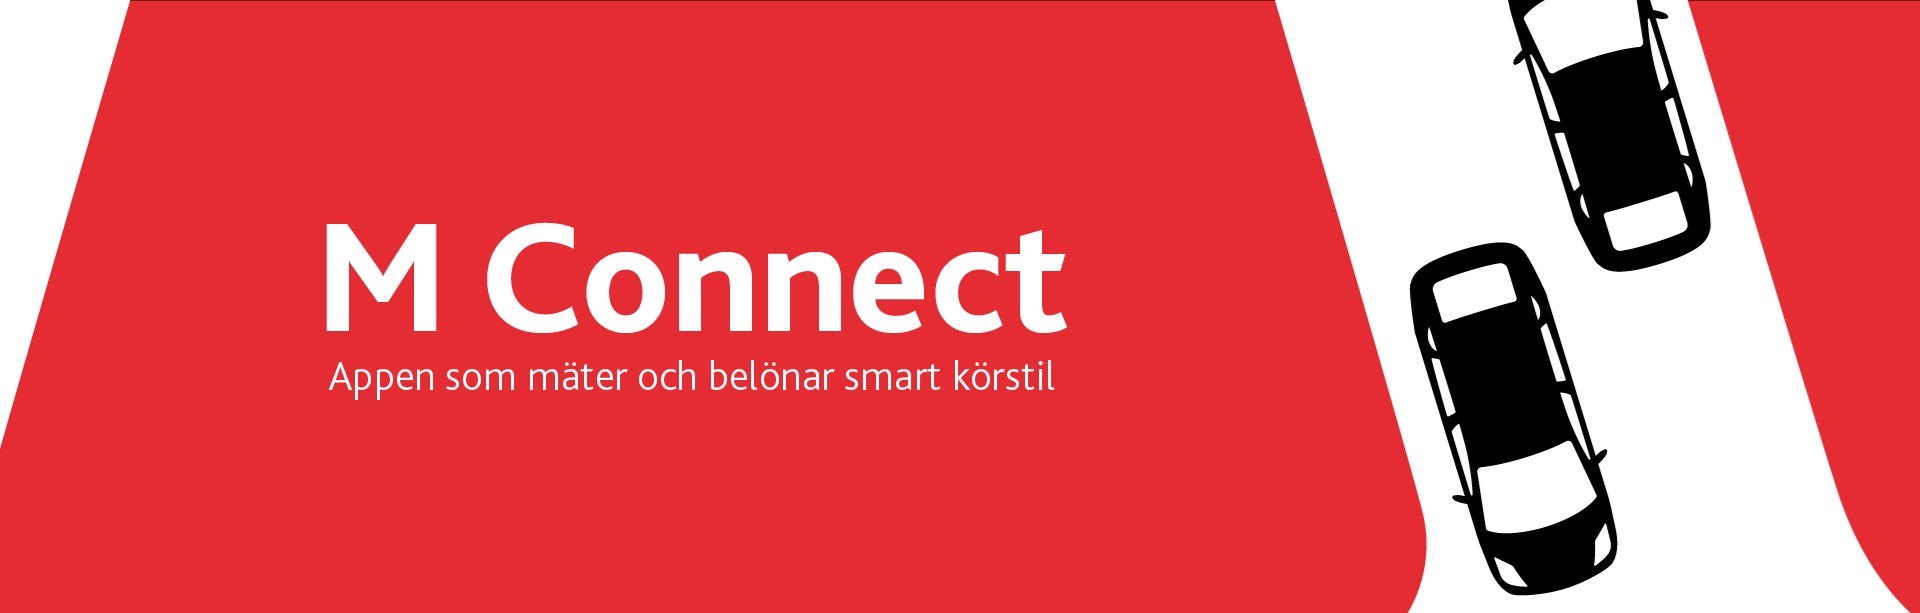 M Sveriges app M Connect belönar smart körstil